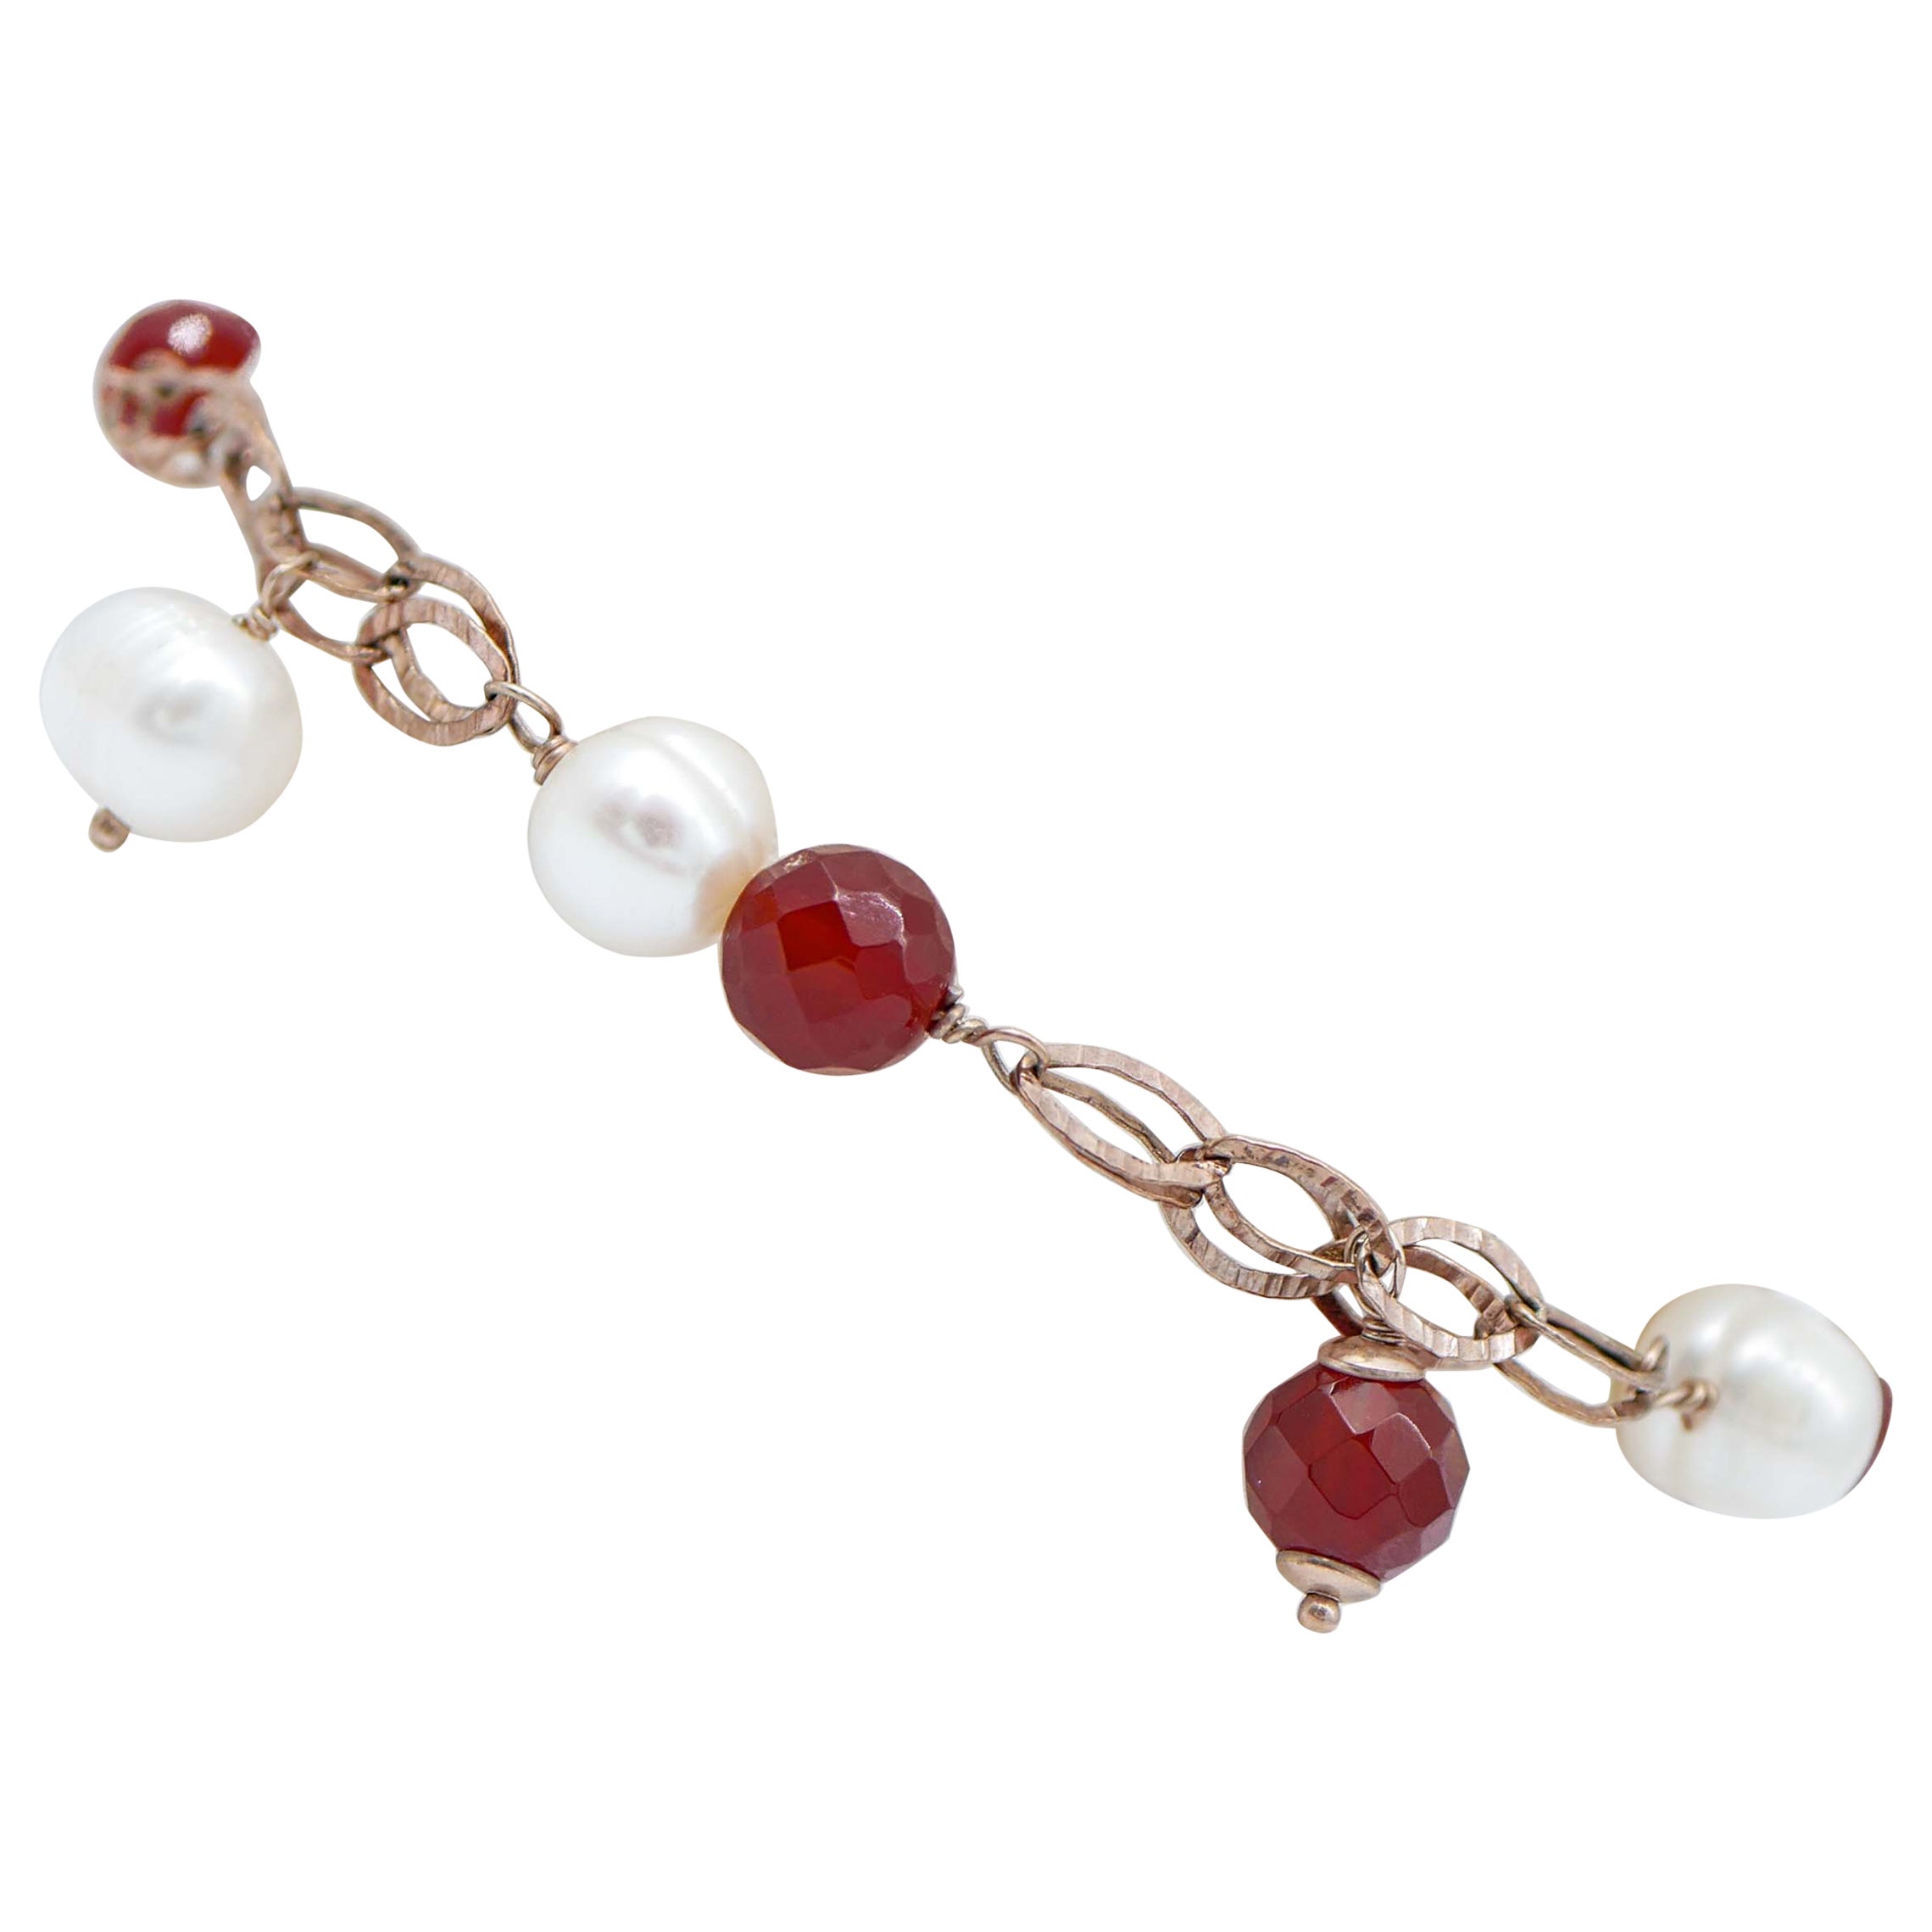 Carnelian, Pearls, Retrò Bracelet For Sale